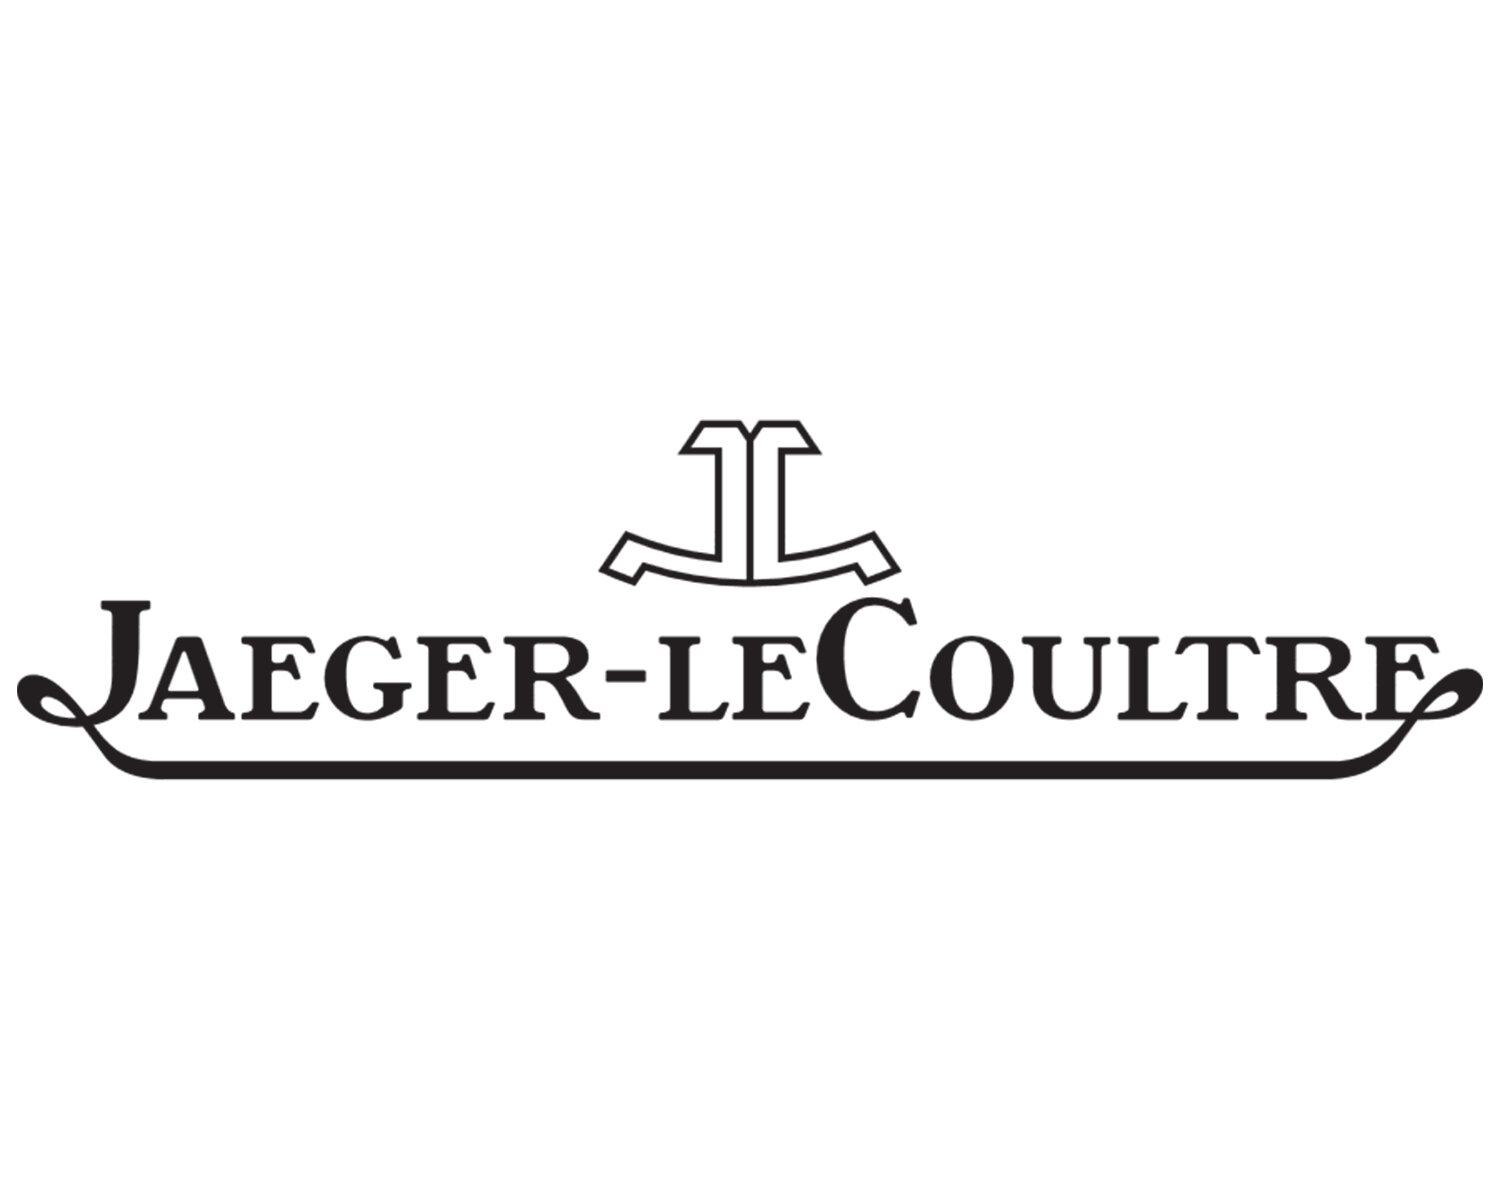 Jaeger LeCoultre.jpg